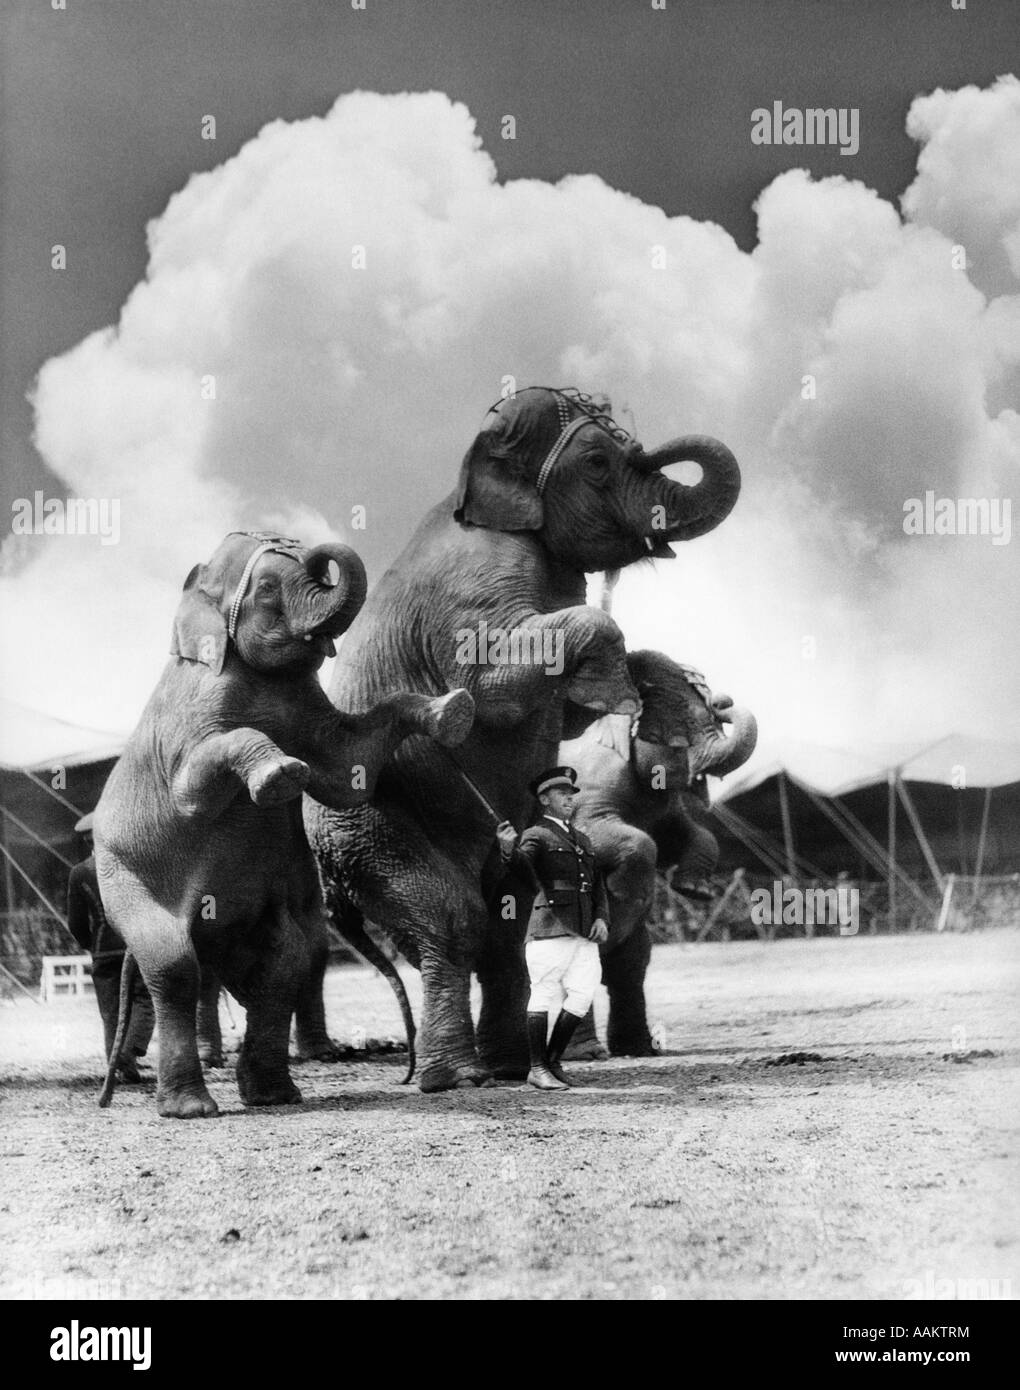 1930s CIRCUS TRAINER DI FRONTE 3 elefanti Elephas maximus indicus in piedi sulle zampe posteriori Foto Stock